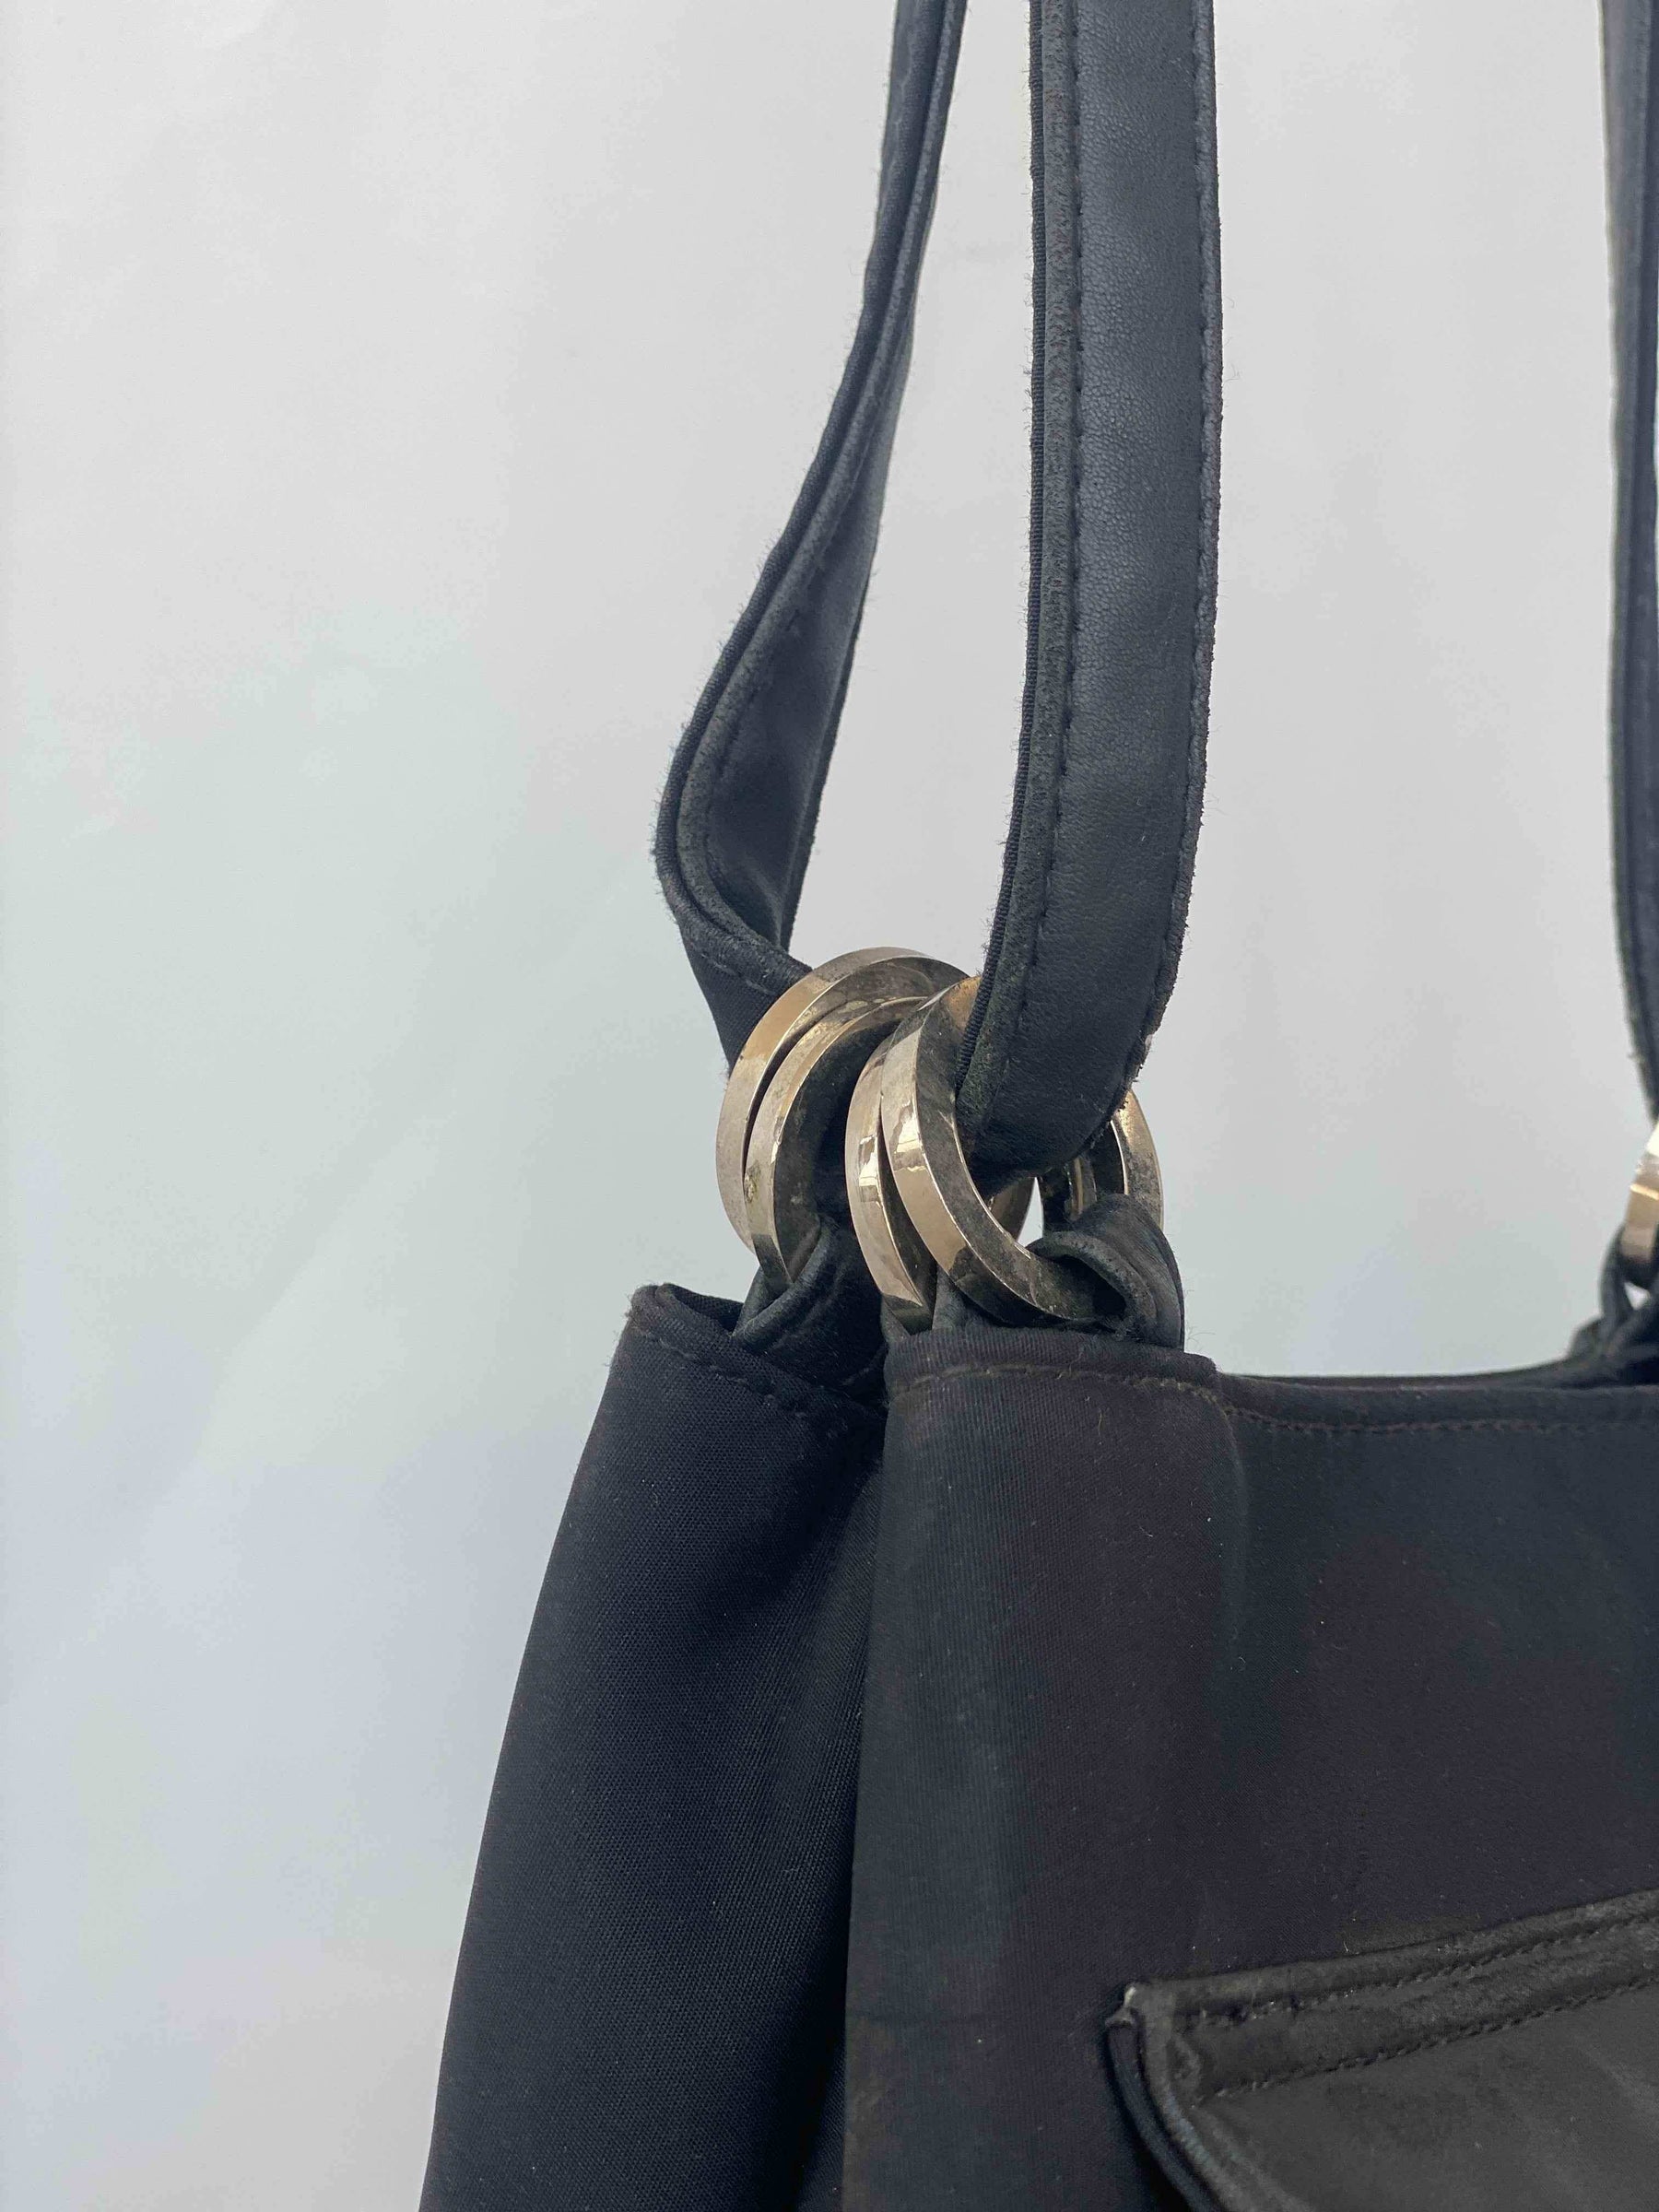 New Vintage Black Nine West Shoulder Bag With Long Straps